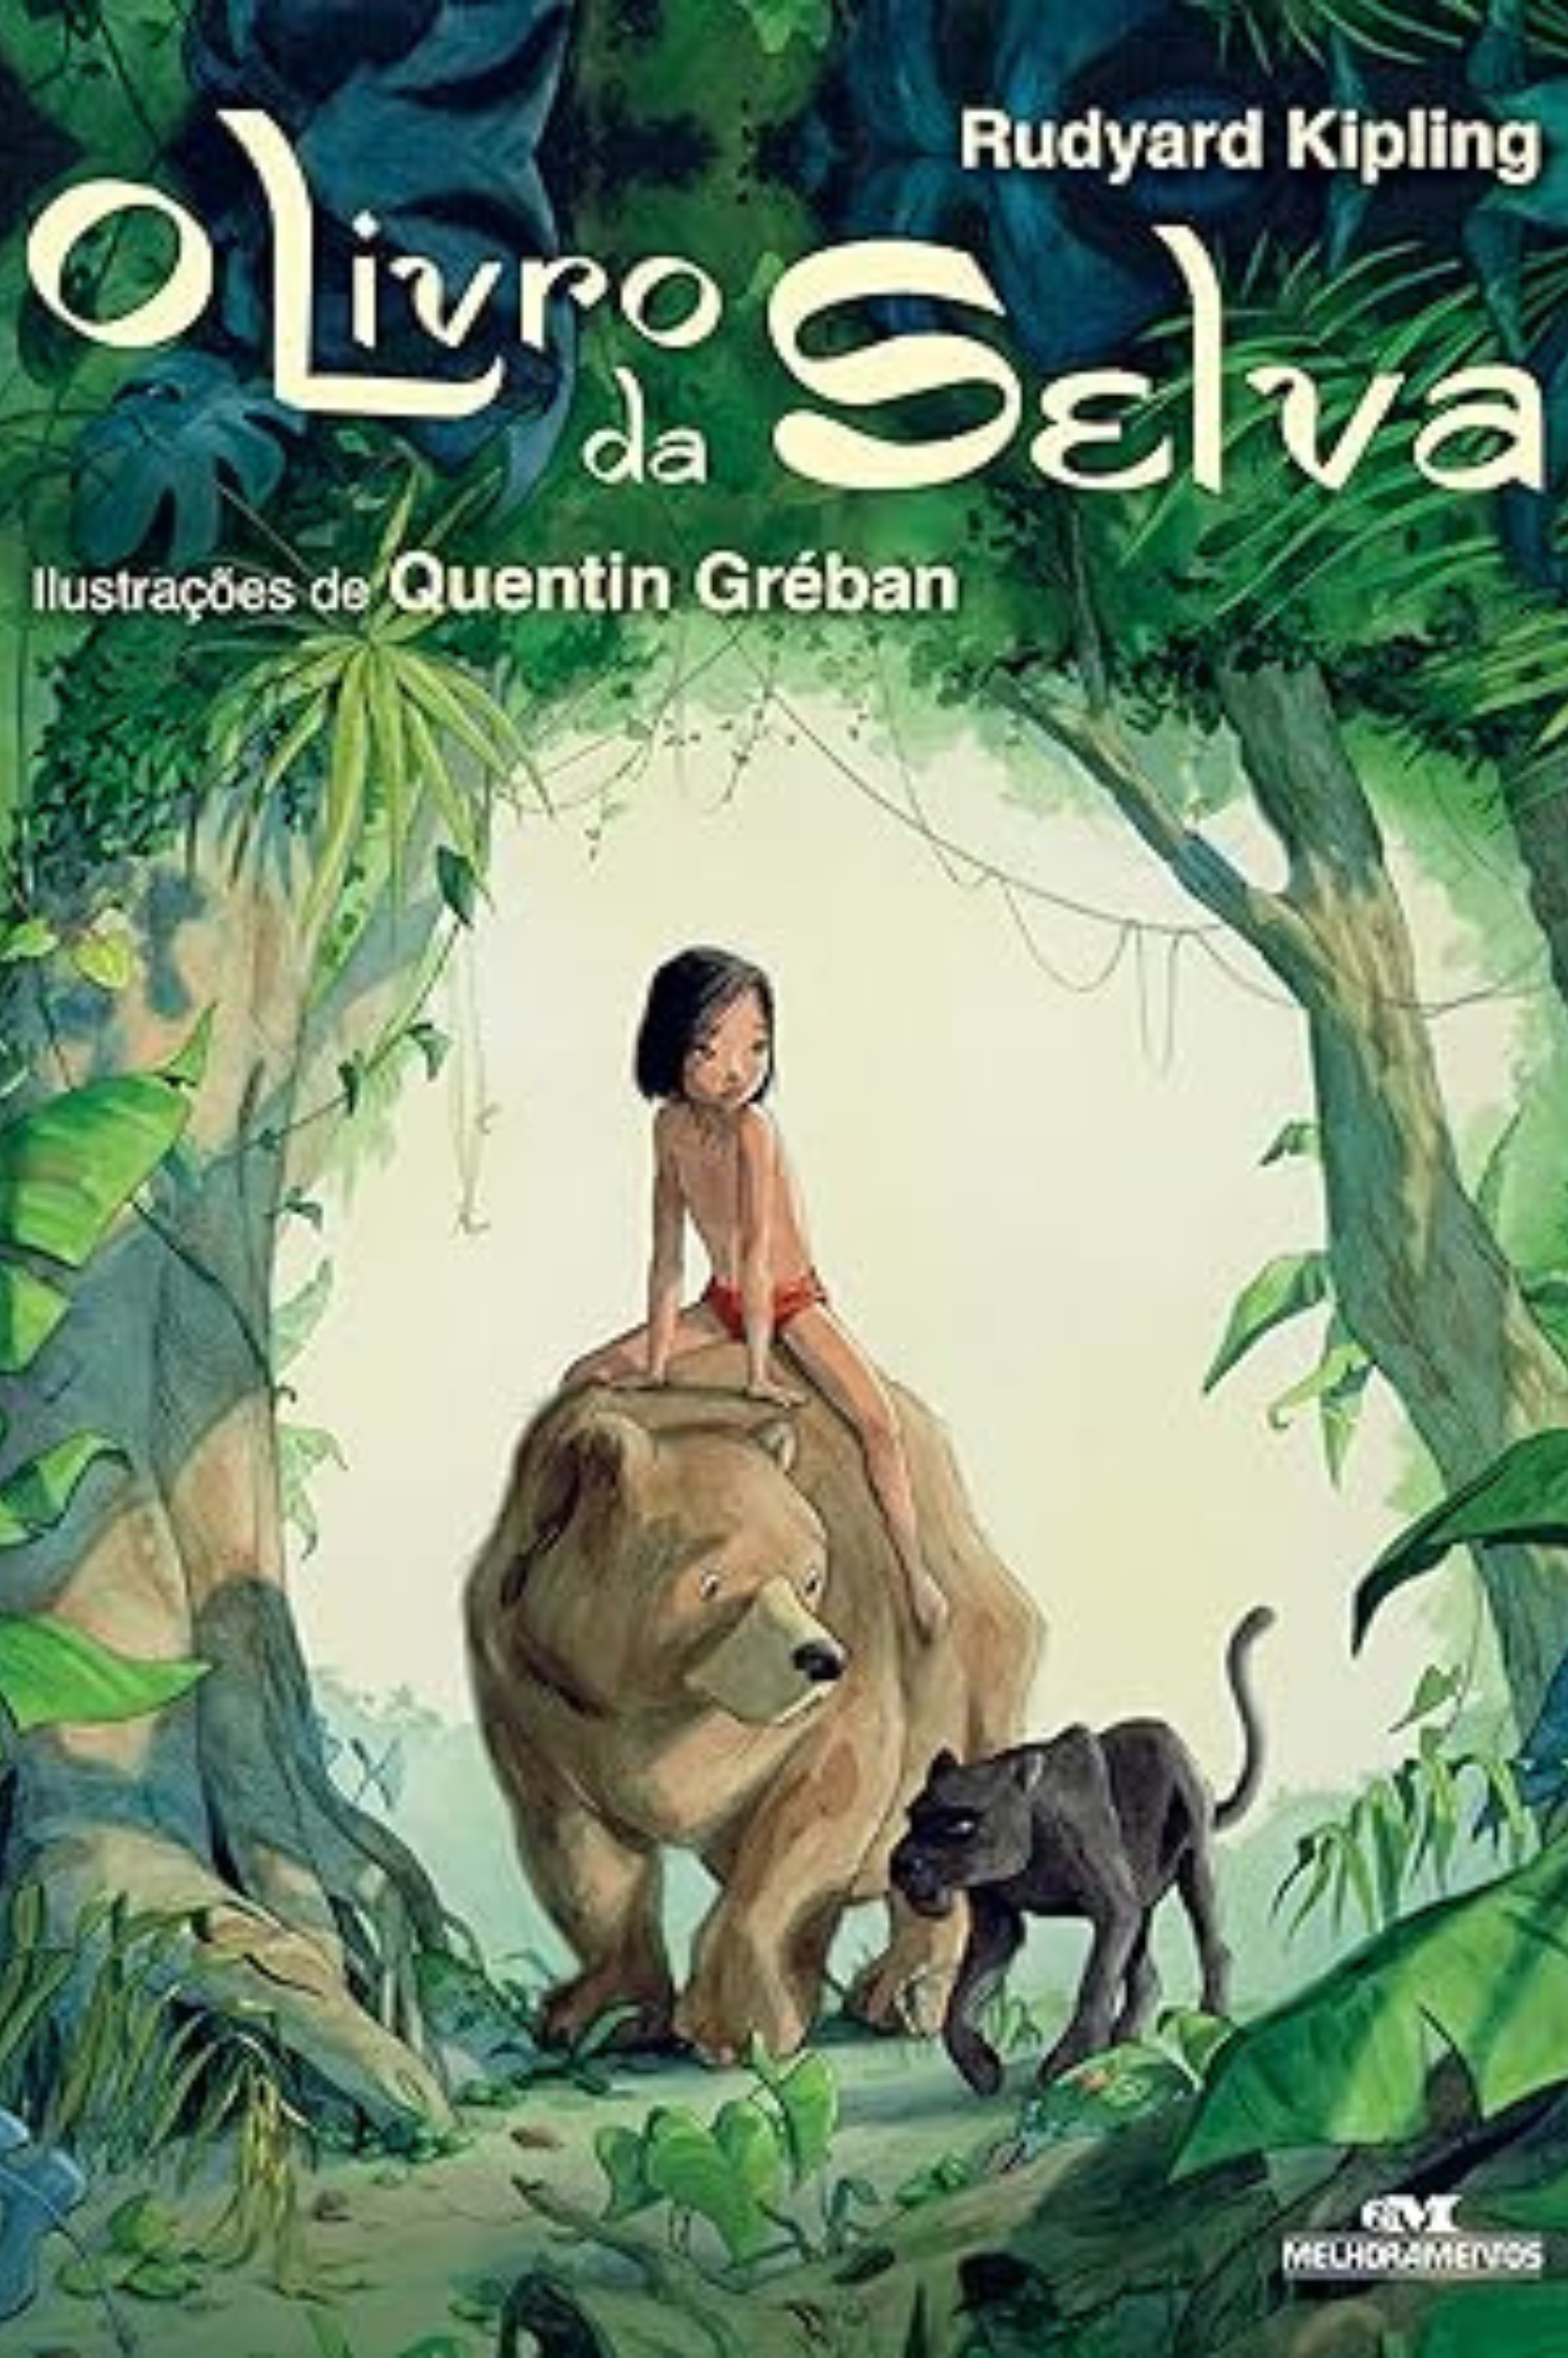 As aventuras emocionantes de Mowgli em "O Livro da Selva" de Rudyard Kipling. Explore personagens cativantes nesta narrativa fascinante. Leia nosso review completo!